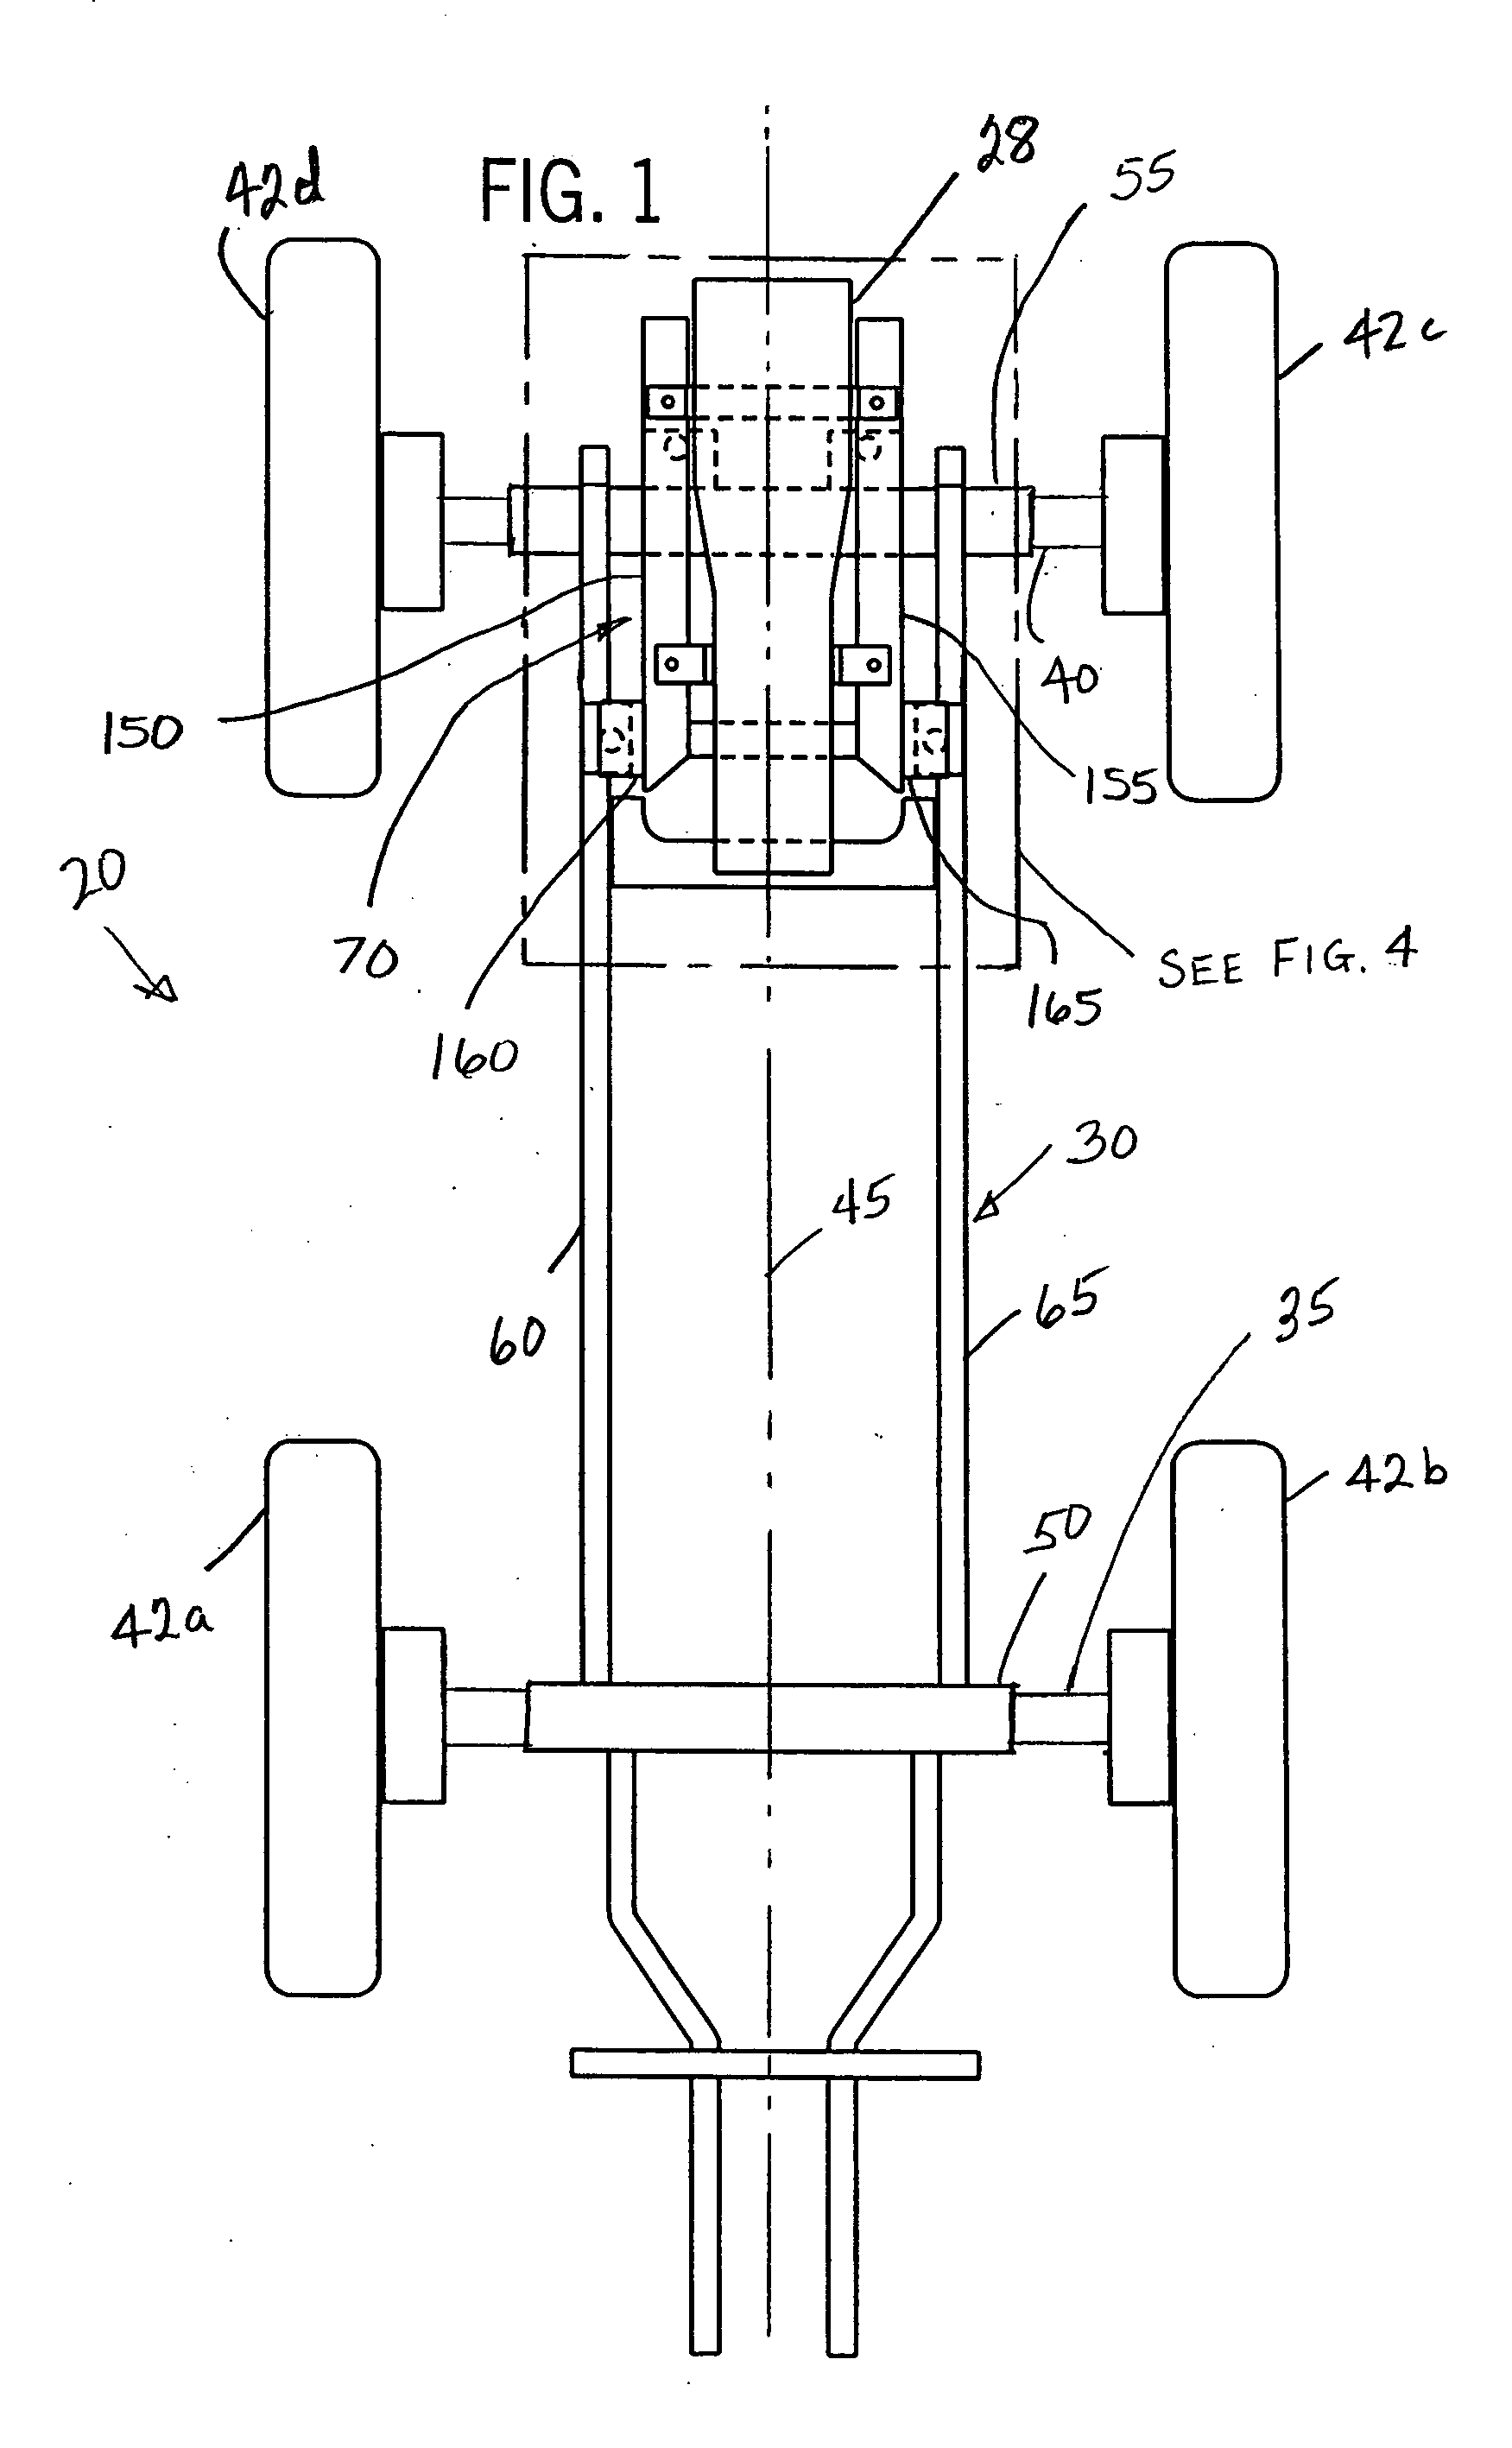 Engine subframe mounting arrangement